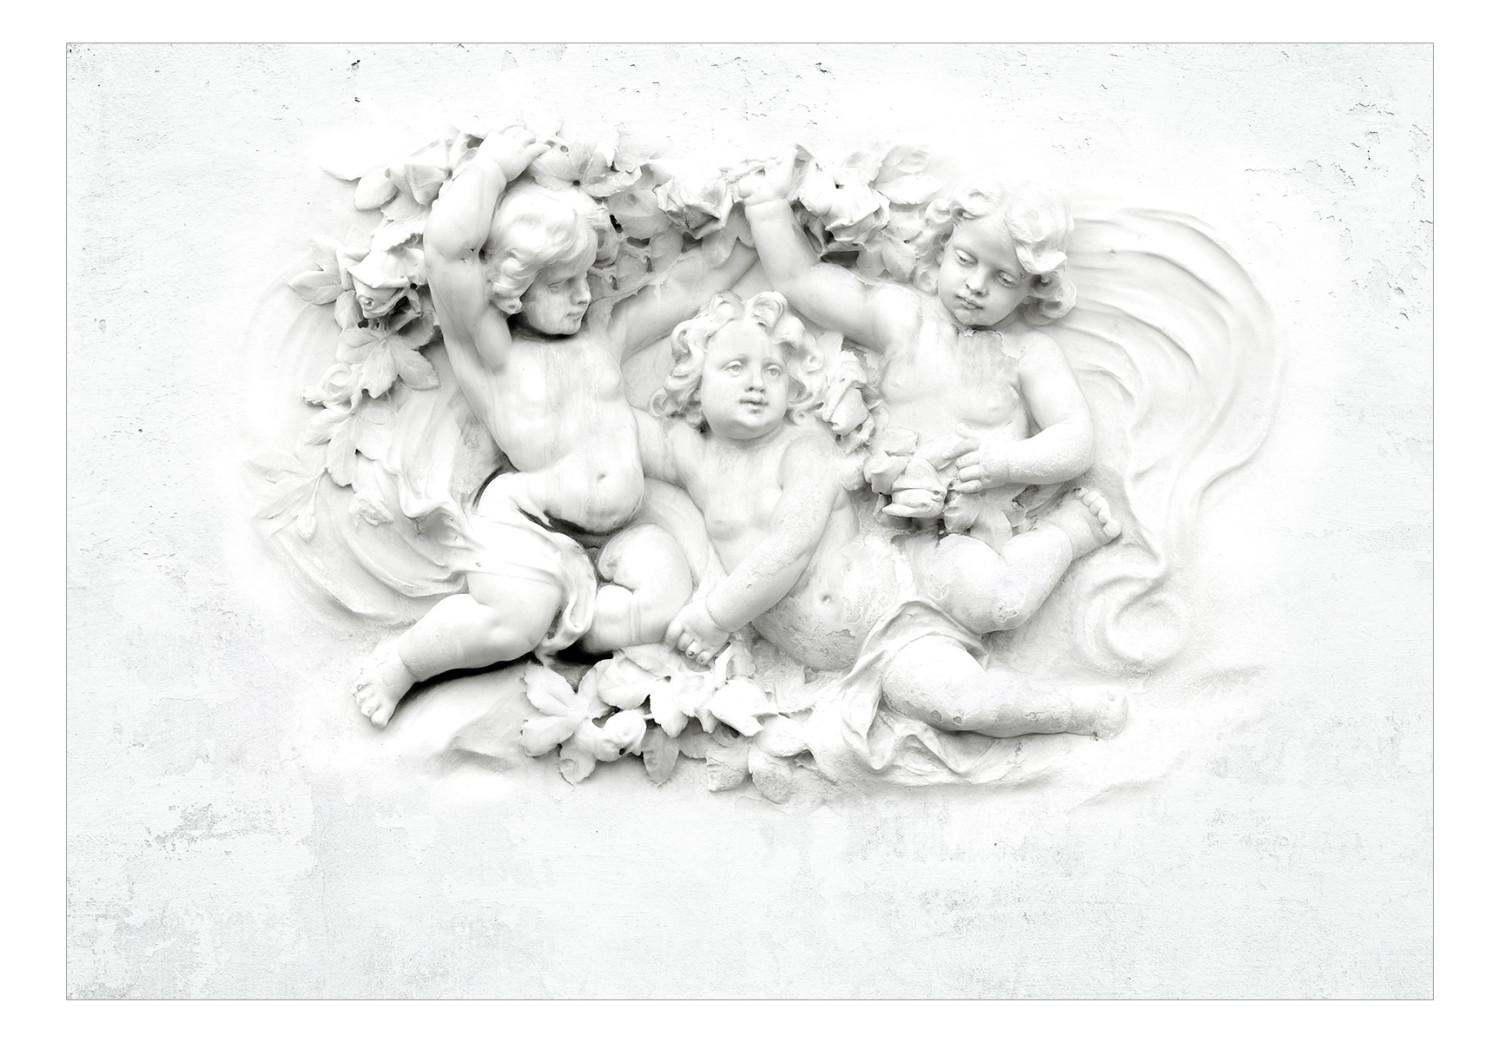 Fotomural Motivo religioso - Esculturas de angelitos en fondo blanco